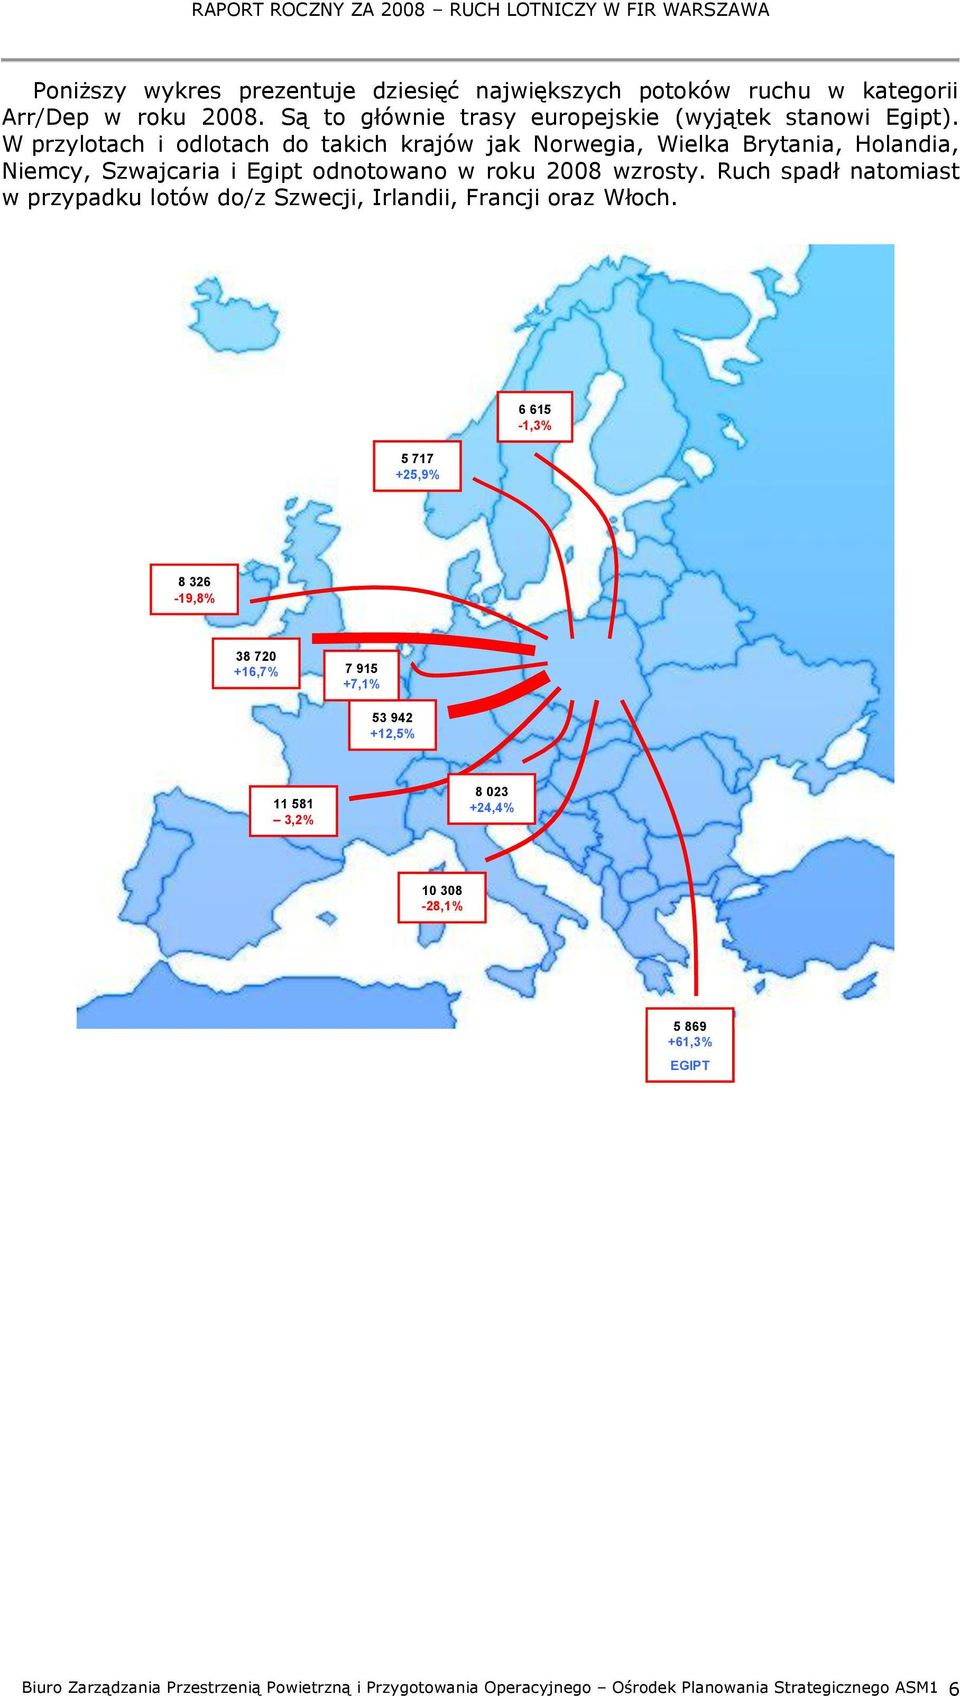 Ruch spadł natomiast w przypadku lotów do/z Szwecji, Irlandii, Francji oraz Włoch.